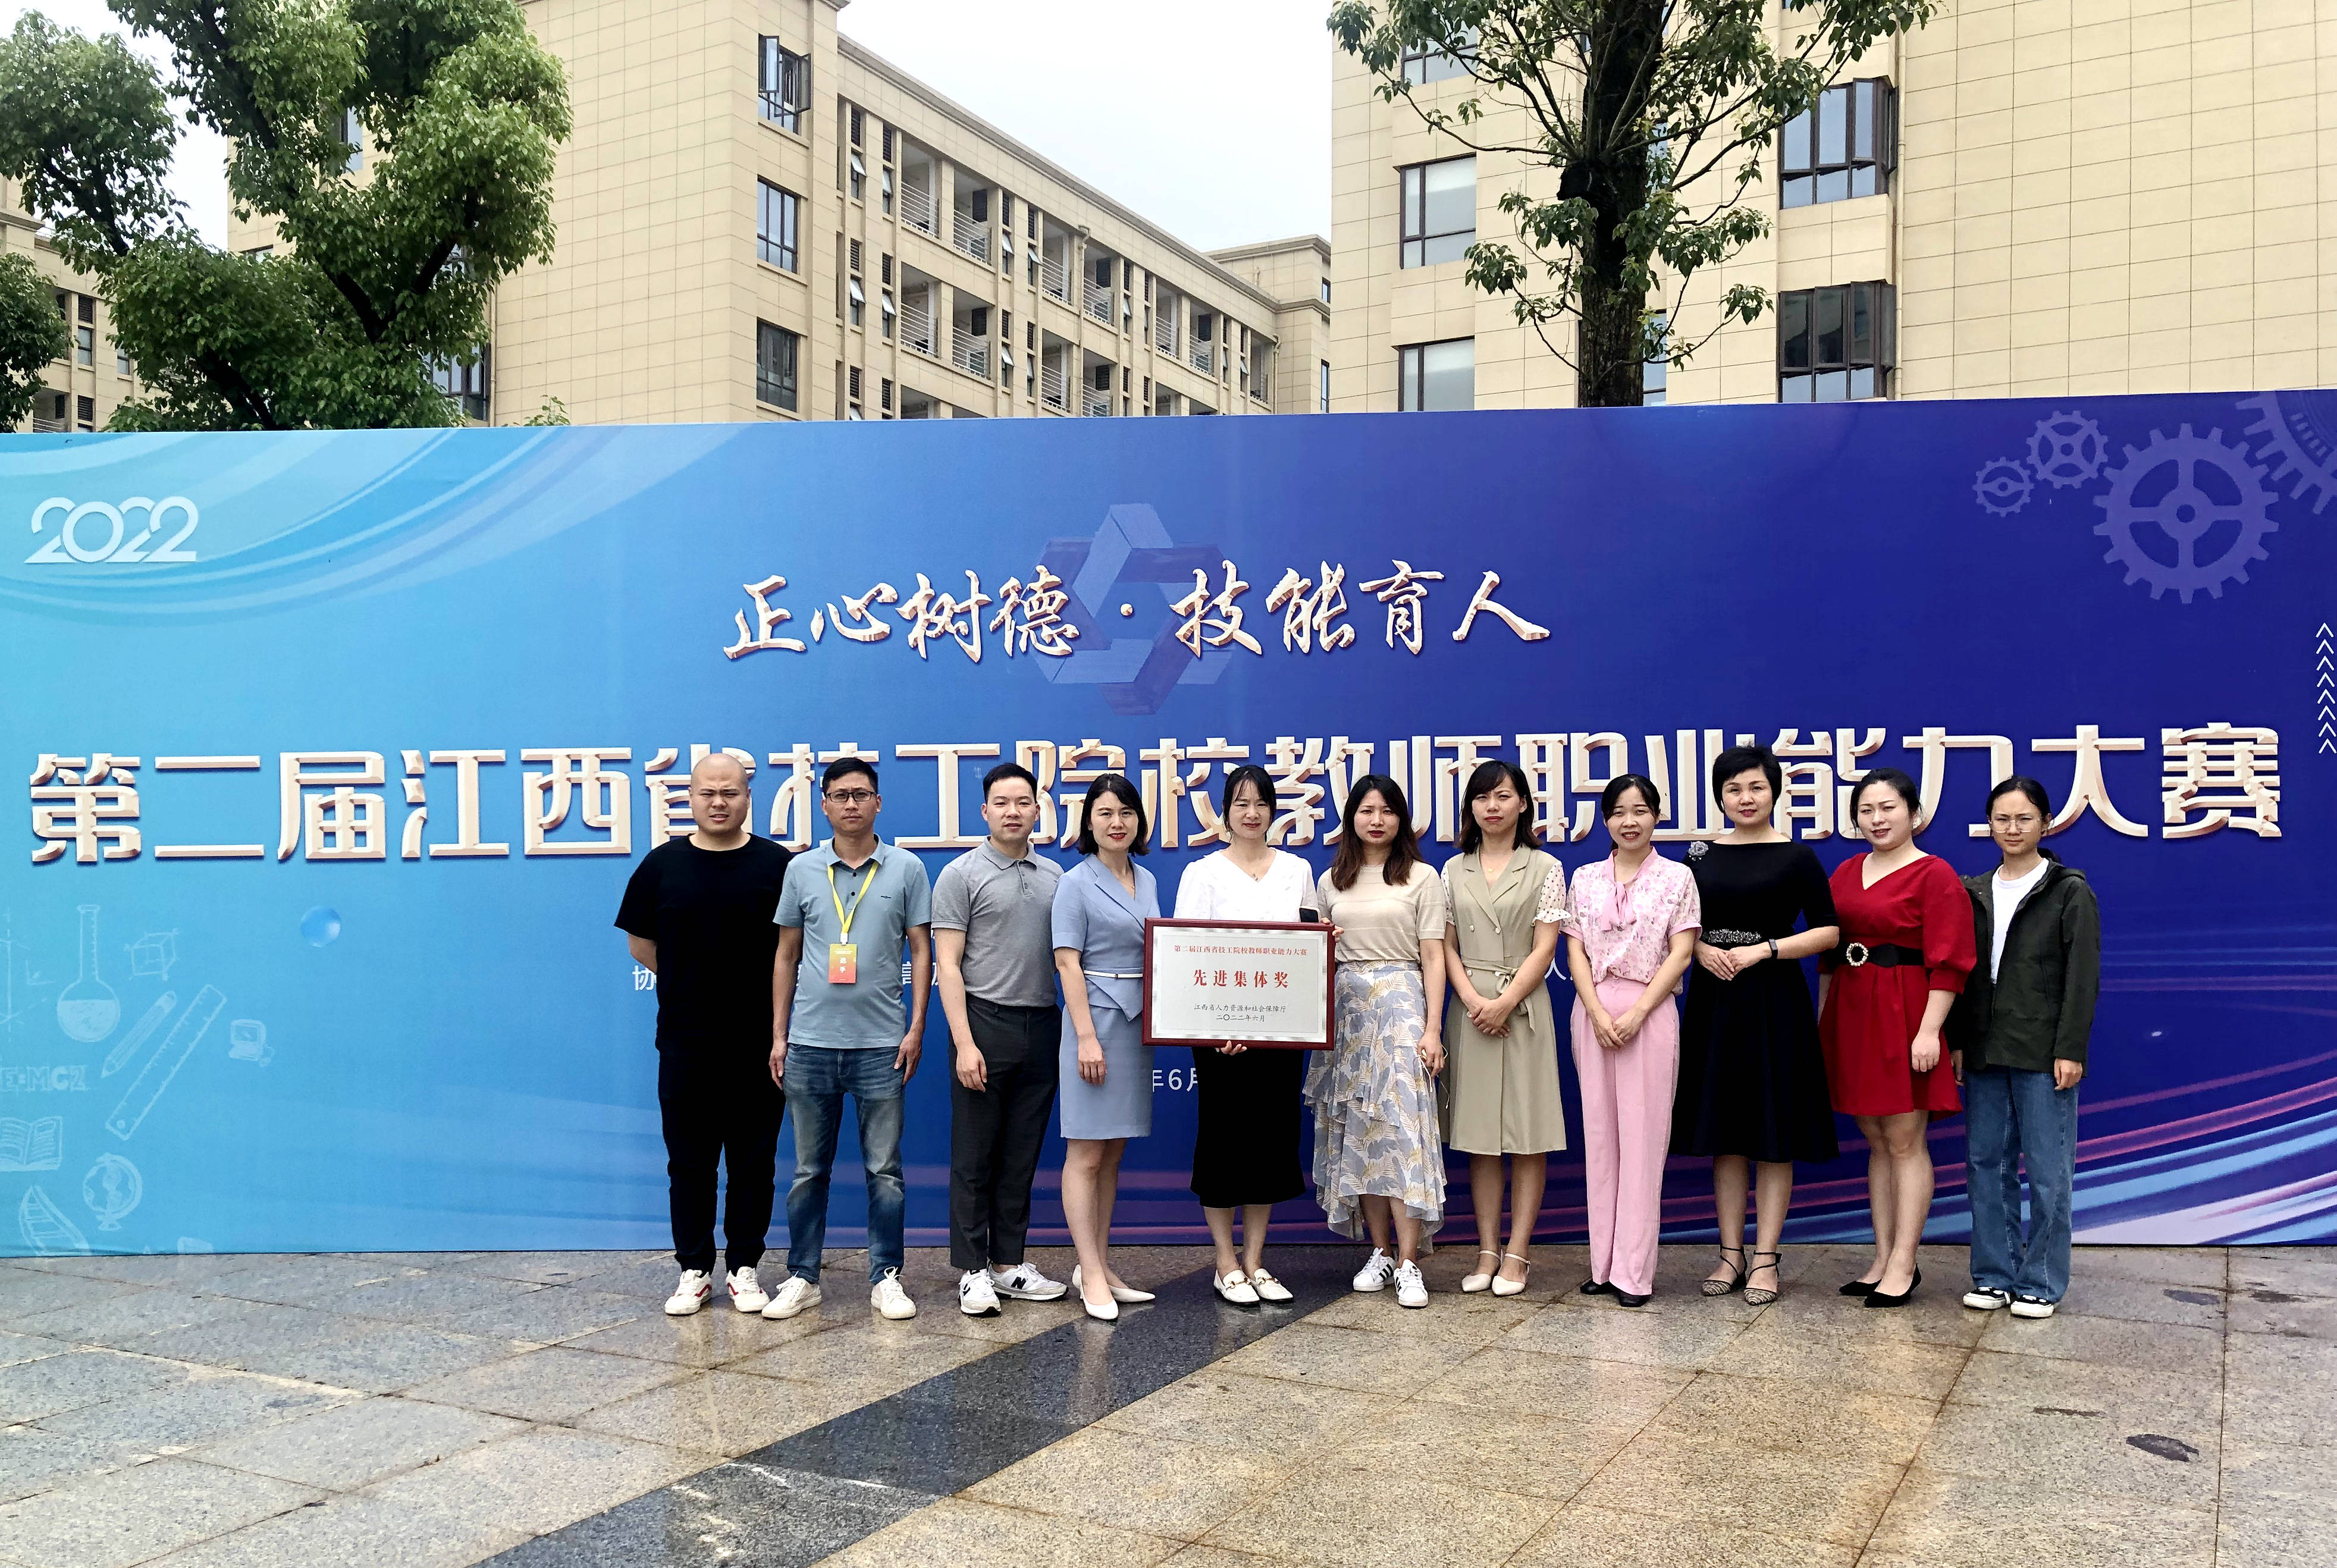 江西工业贸易职业技术学院在第二届江西省技工院校教师职业能力大赛中荣获佳绩